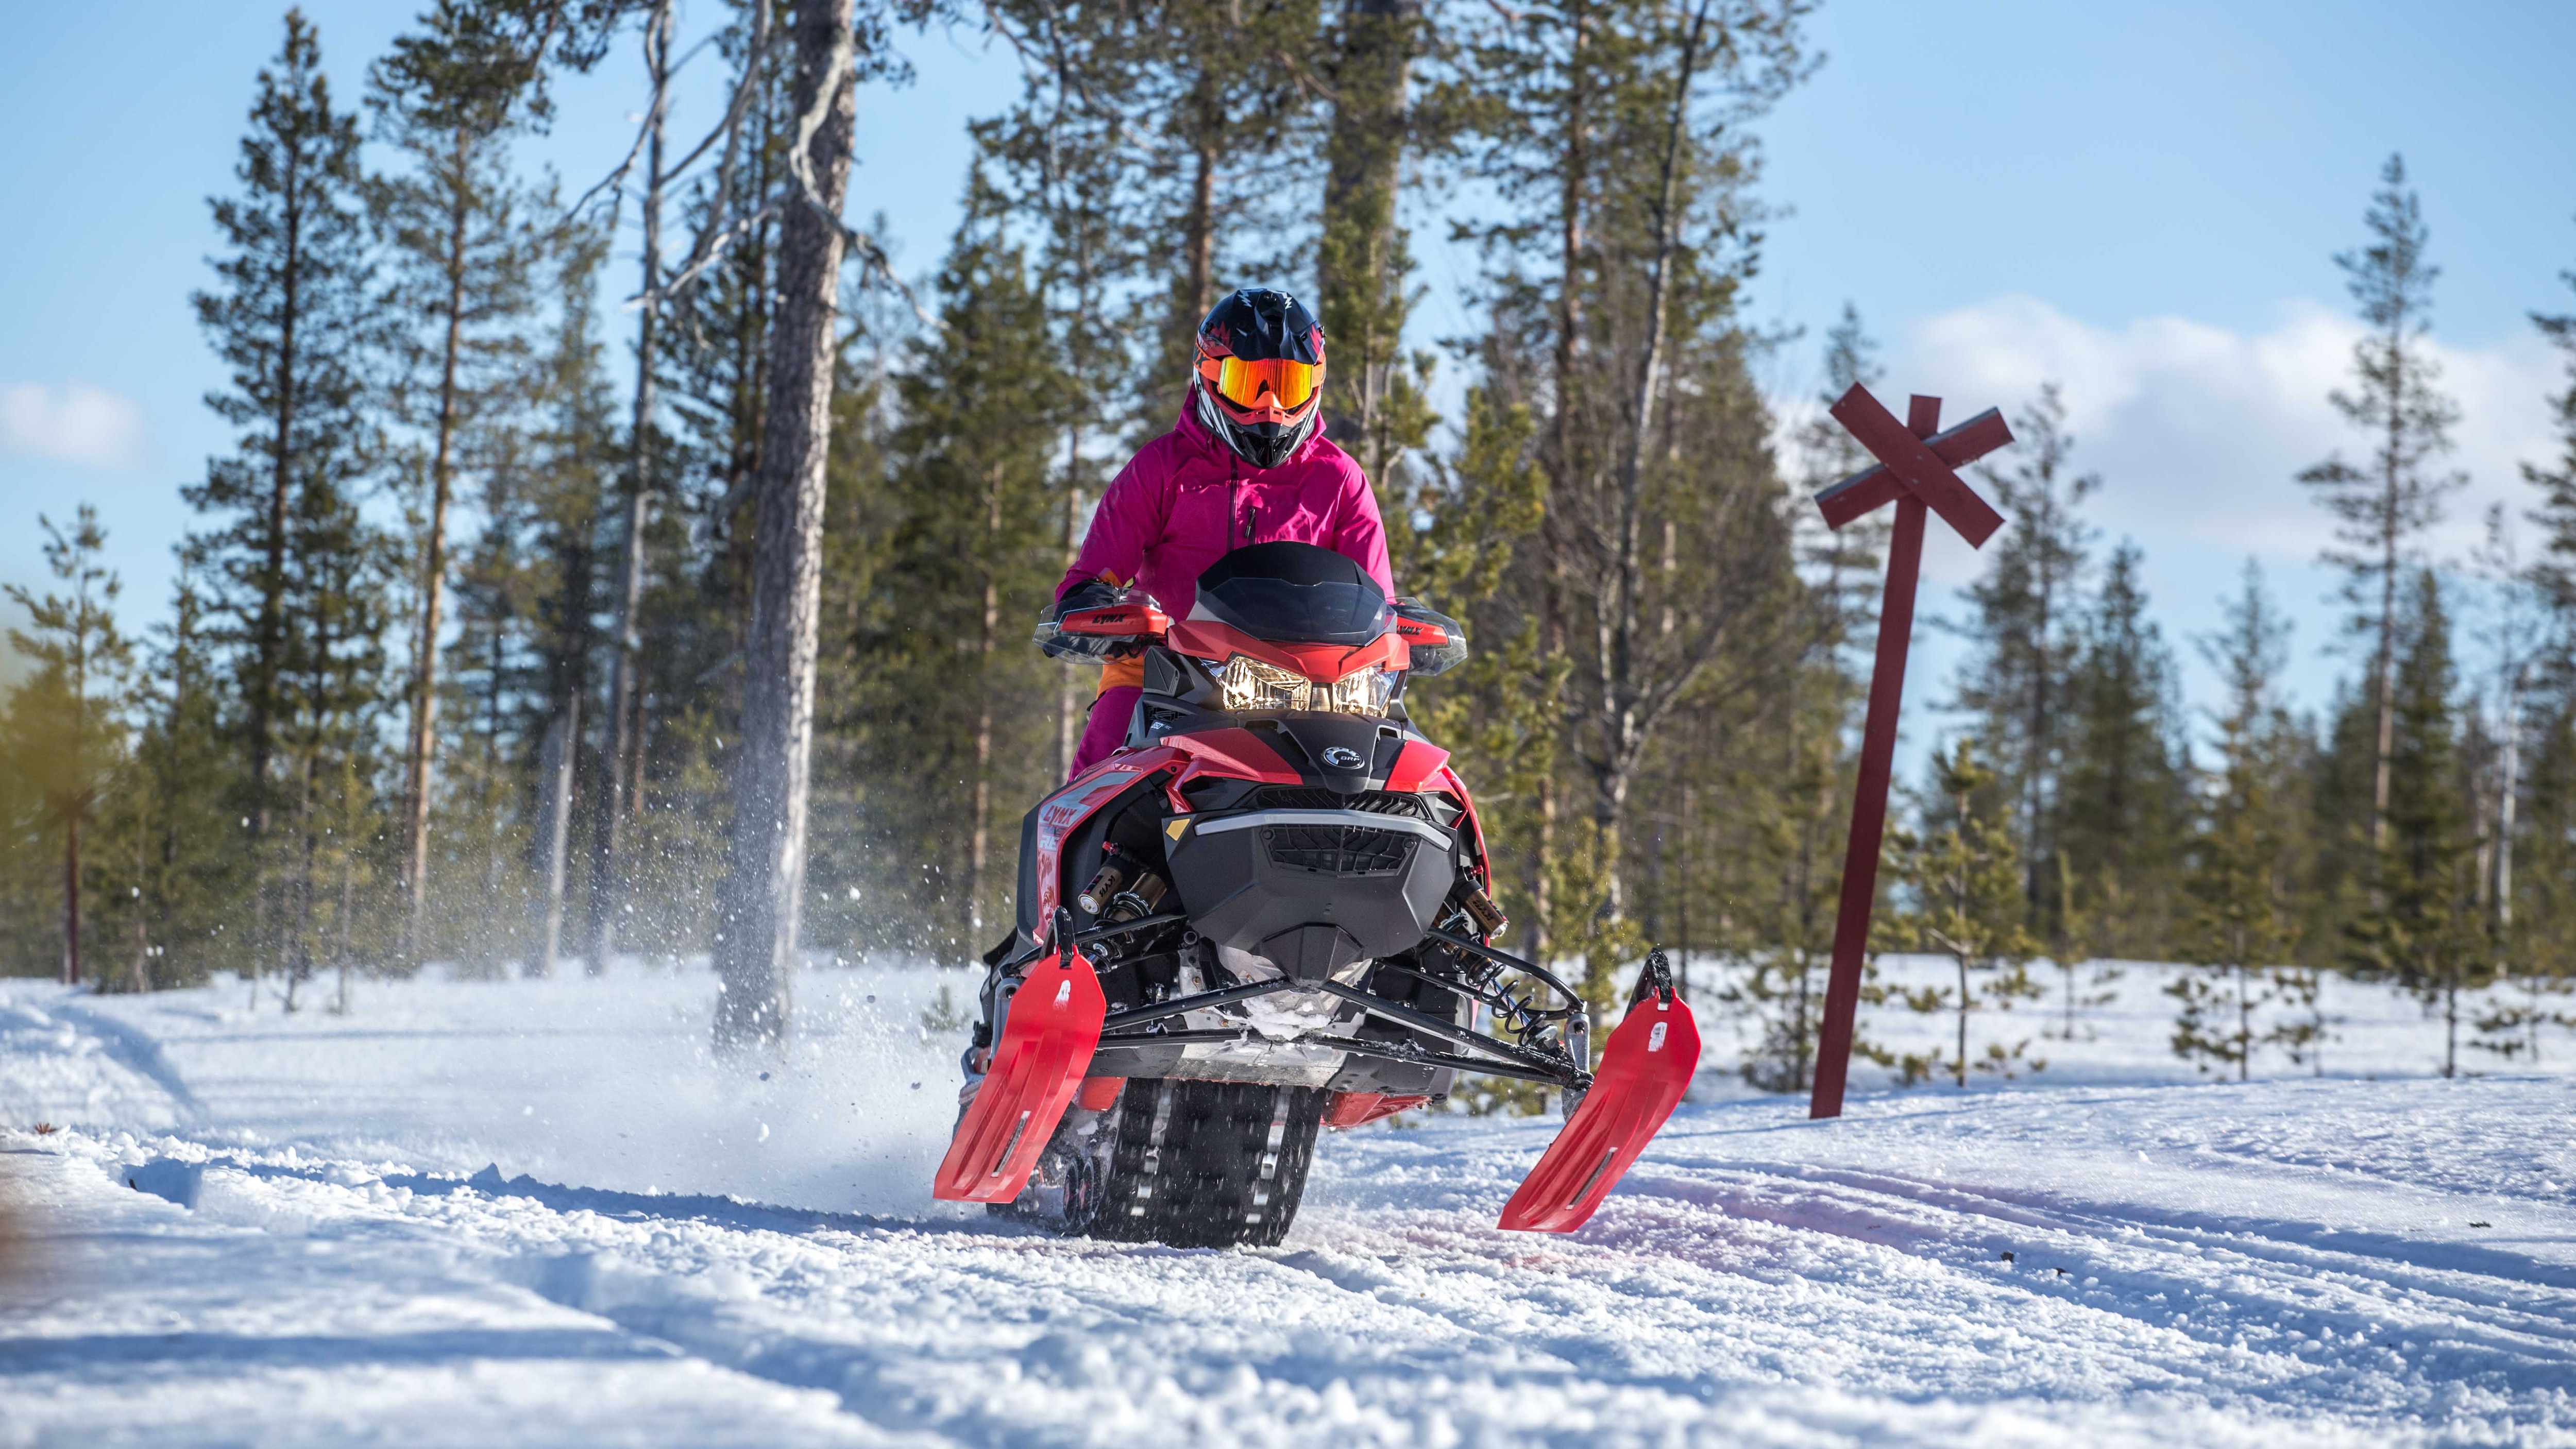 Formelfører Emma Kimiläinen som kjører snøscooter i Nord-Finland